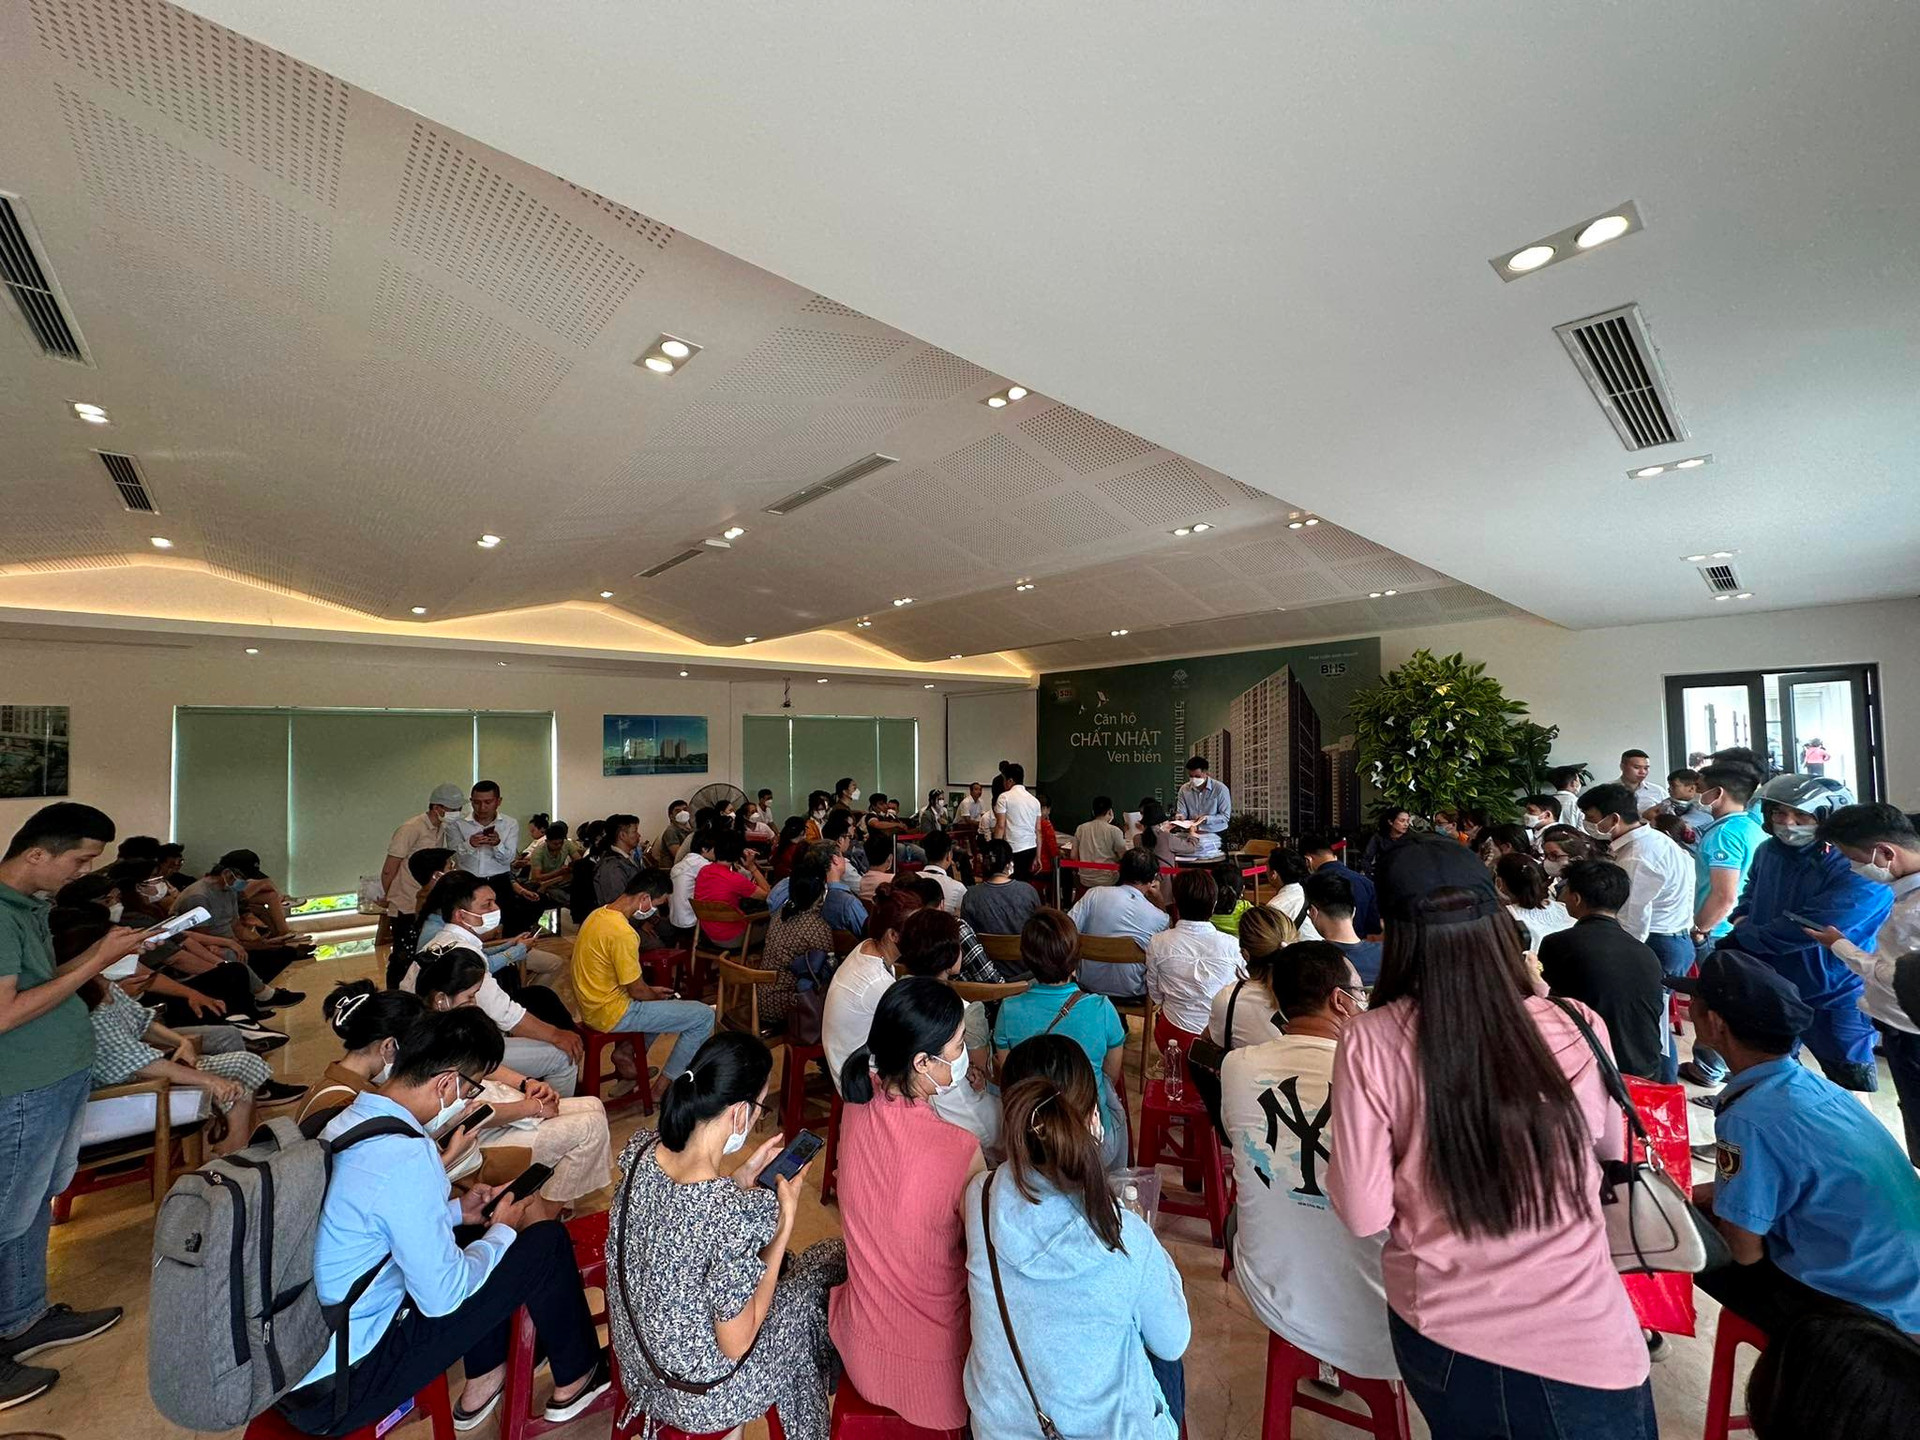 Một dự án chung cư tại Đà Nẵng khiến 200 khách phải xếp hàng từ 5 giờ sáng đăng ký mua, vì sao? - Ảnh 2.